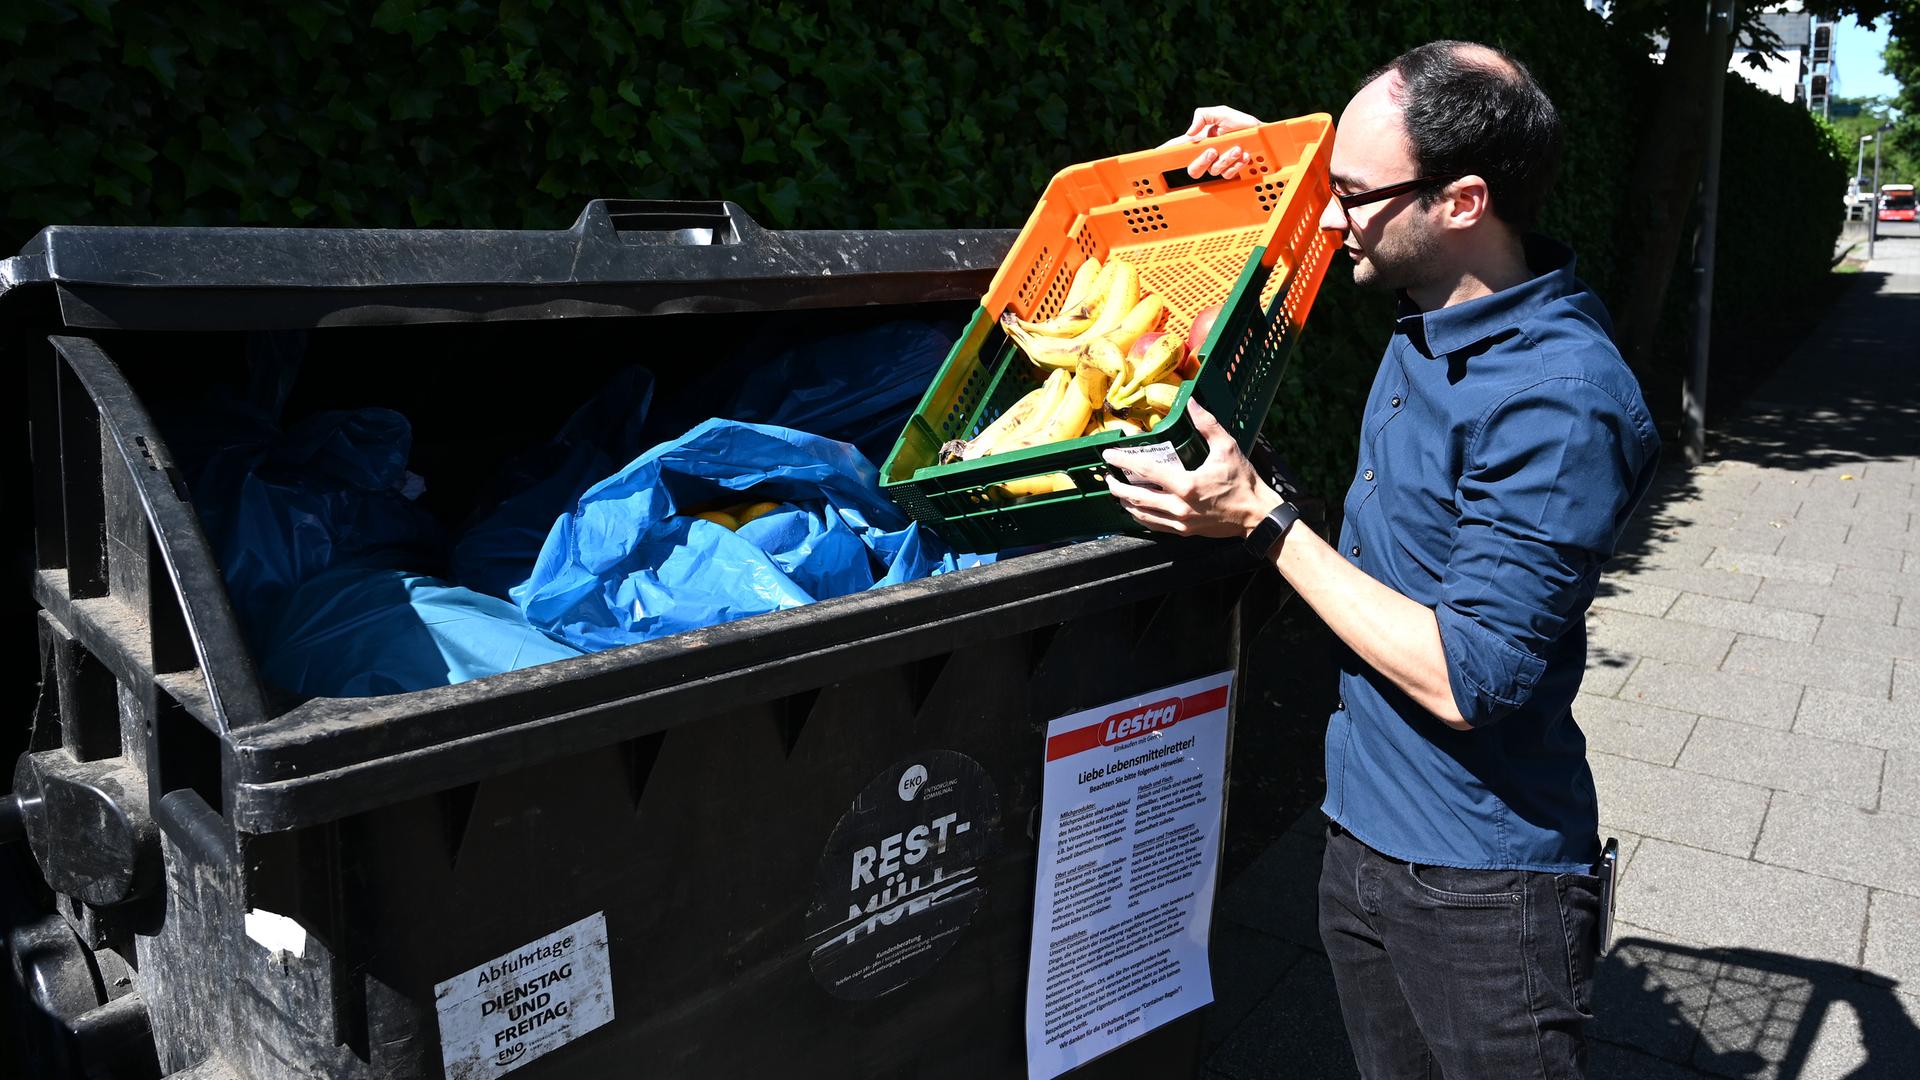 Michael Shaw, Mitarbeiter des Supermarktes Lestra, bringt Obst zu einem Container. Das sogenannte "Containern" ist hier erlaubt. An den Müllcontainern wird sogar mit einem Schild darauf hingewiesen, was voraussichtlich noch bedenkenlos gegessen werden kann und wovon man lieber die Finger lassen sollte.